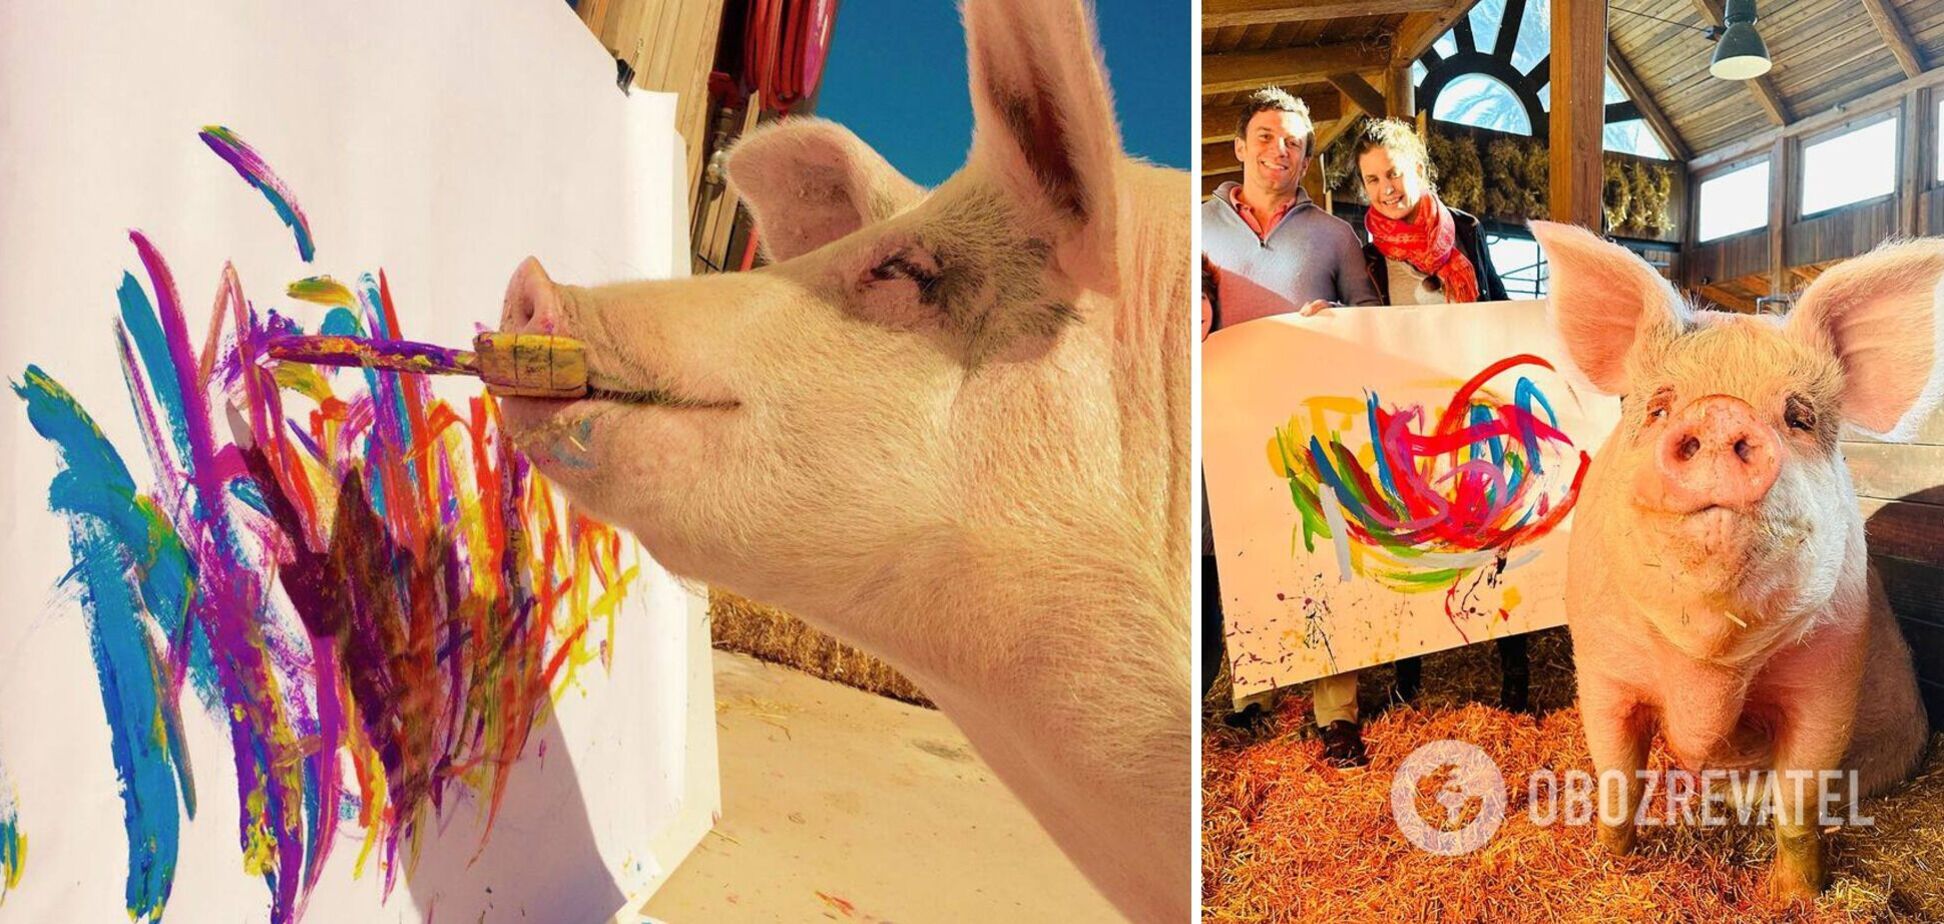 Свинья по кличке Пигкассо заработала больше миллиона долларов, рисуя картины: ее работы есть в коллекции Джорджа Клуни